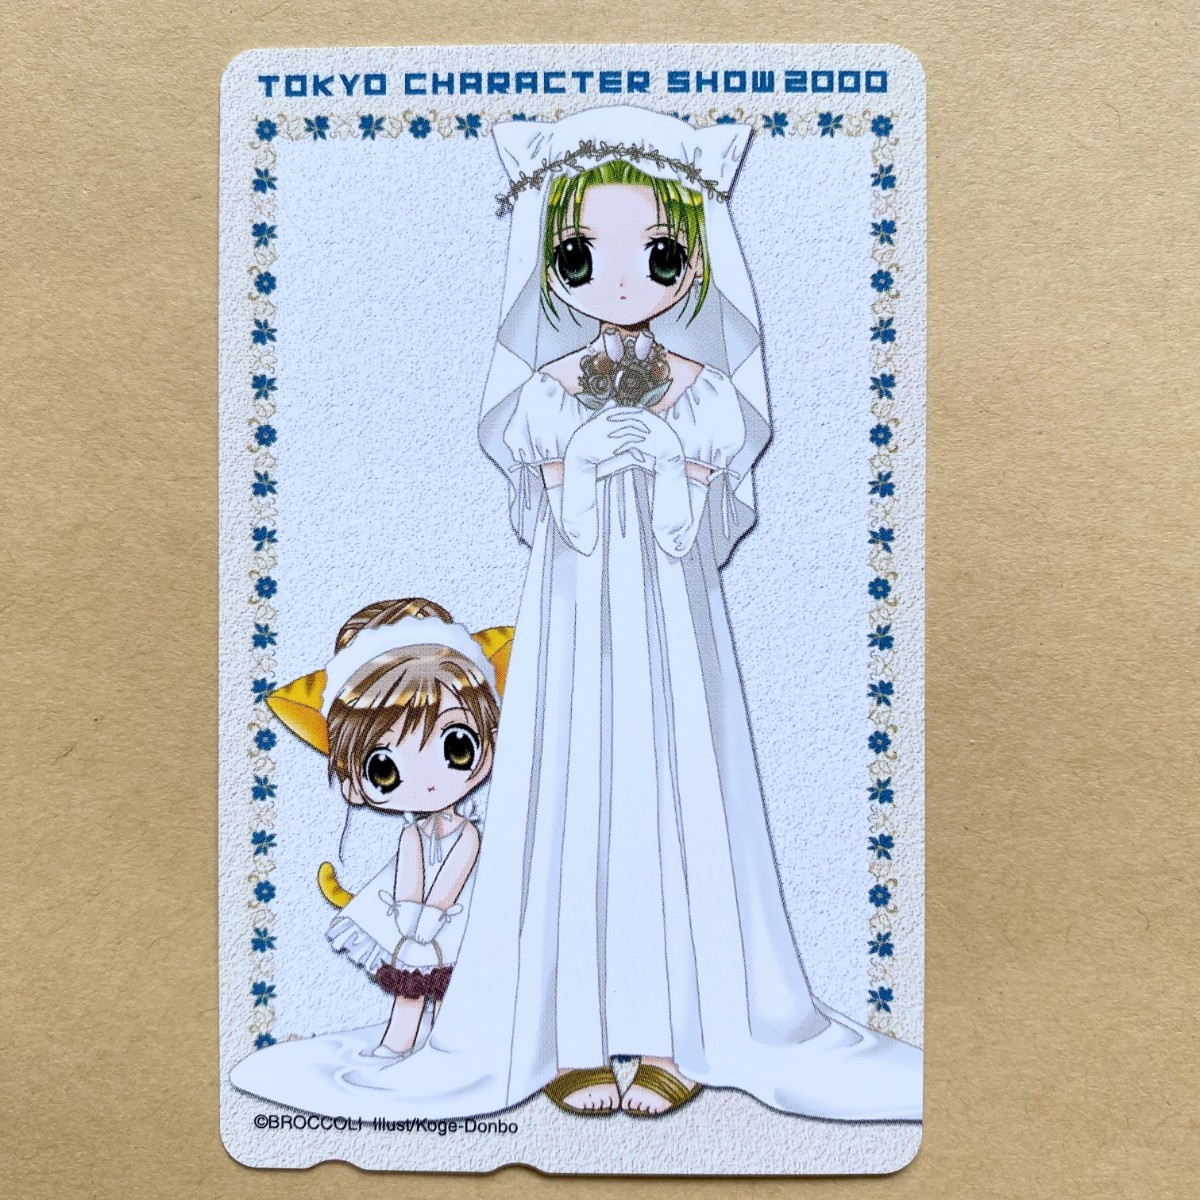 [ не использовался ] телефонная карточка 50 раз te*ji* Cara to Tokyo герой шоу 2000